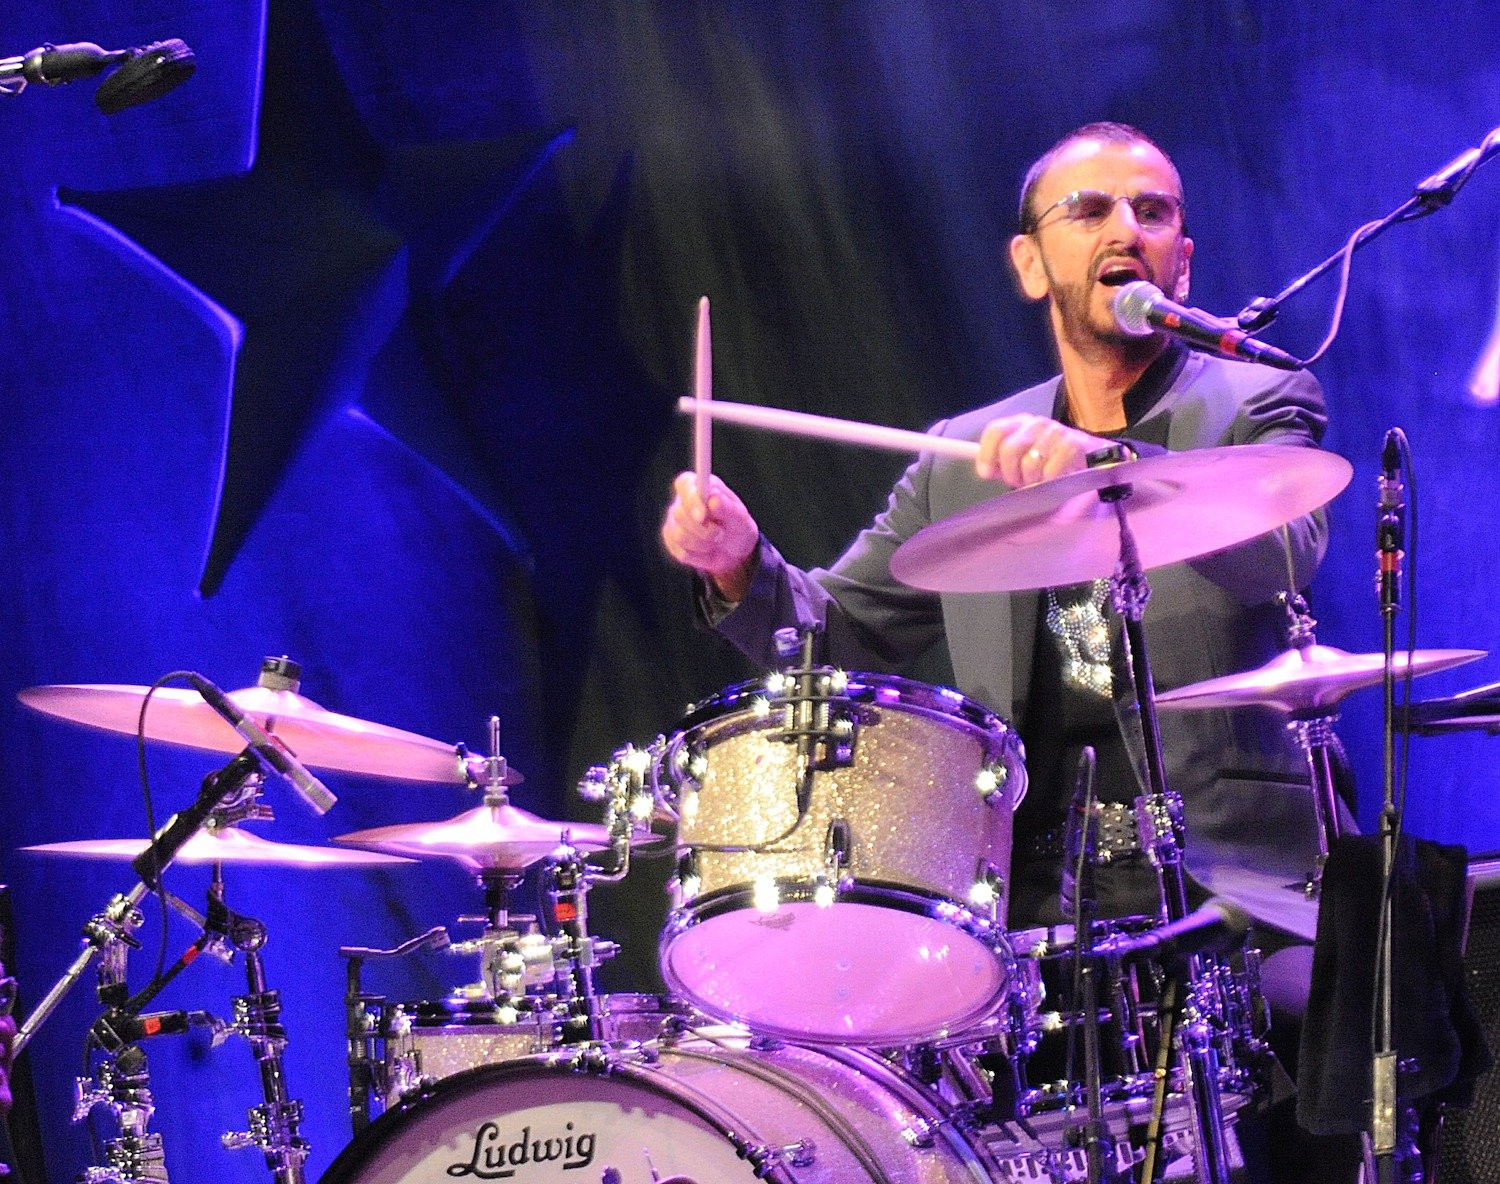 Ringo Starr dice que nunca practica tocar la batería, 'simplemente me lo paso genial'